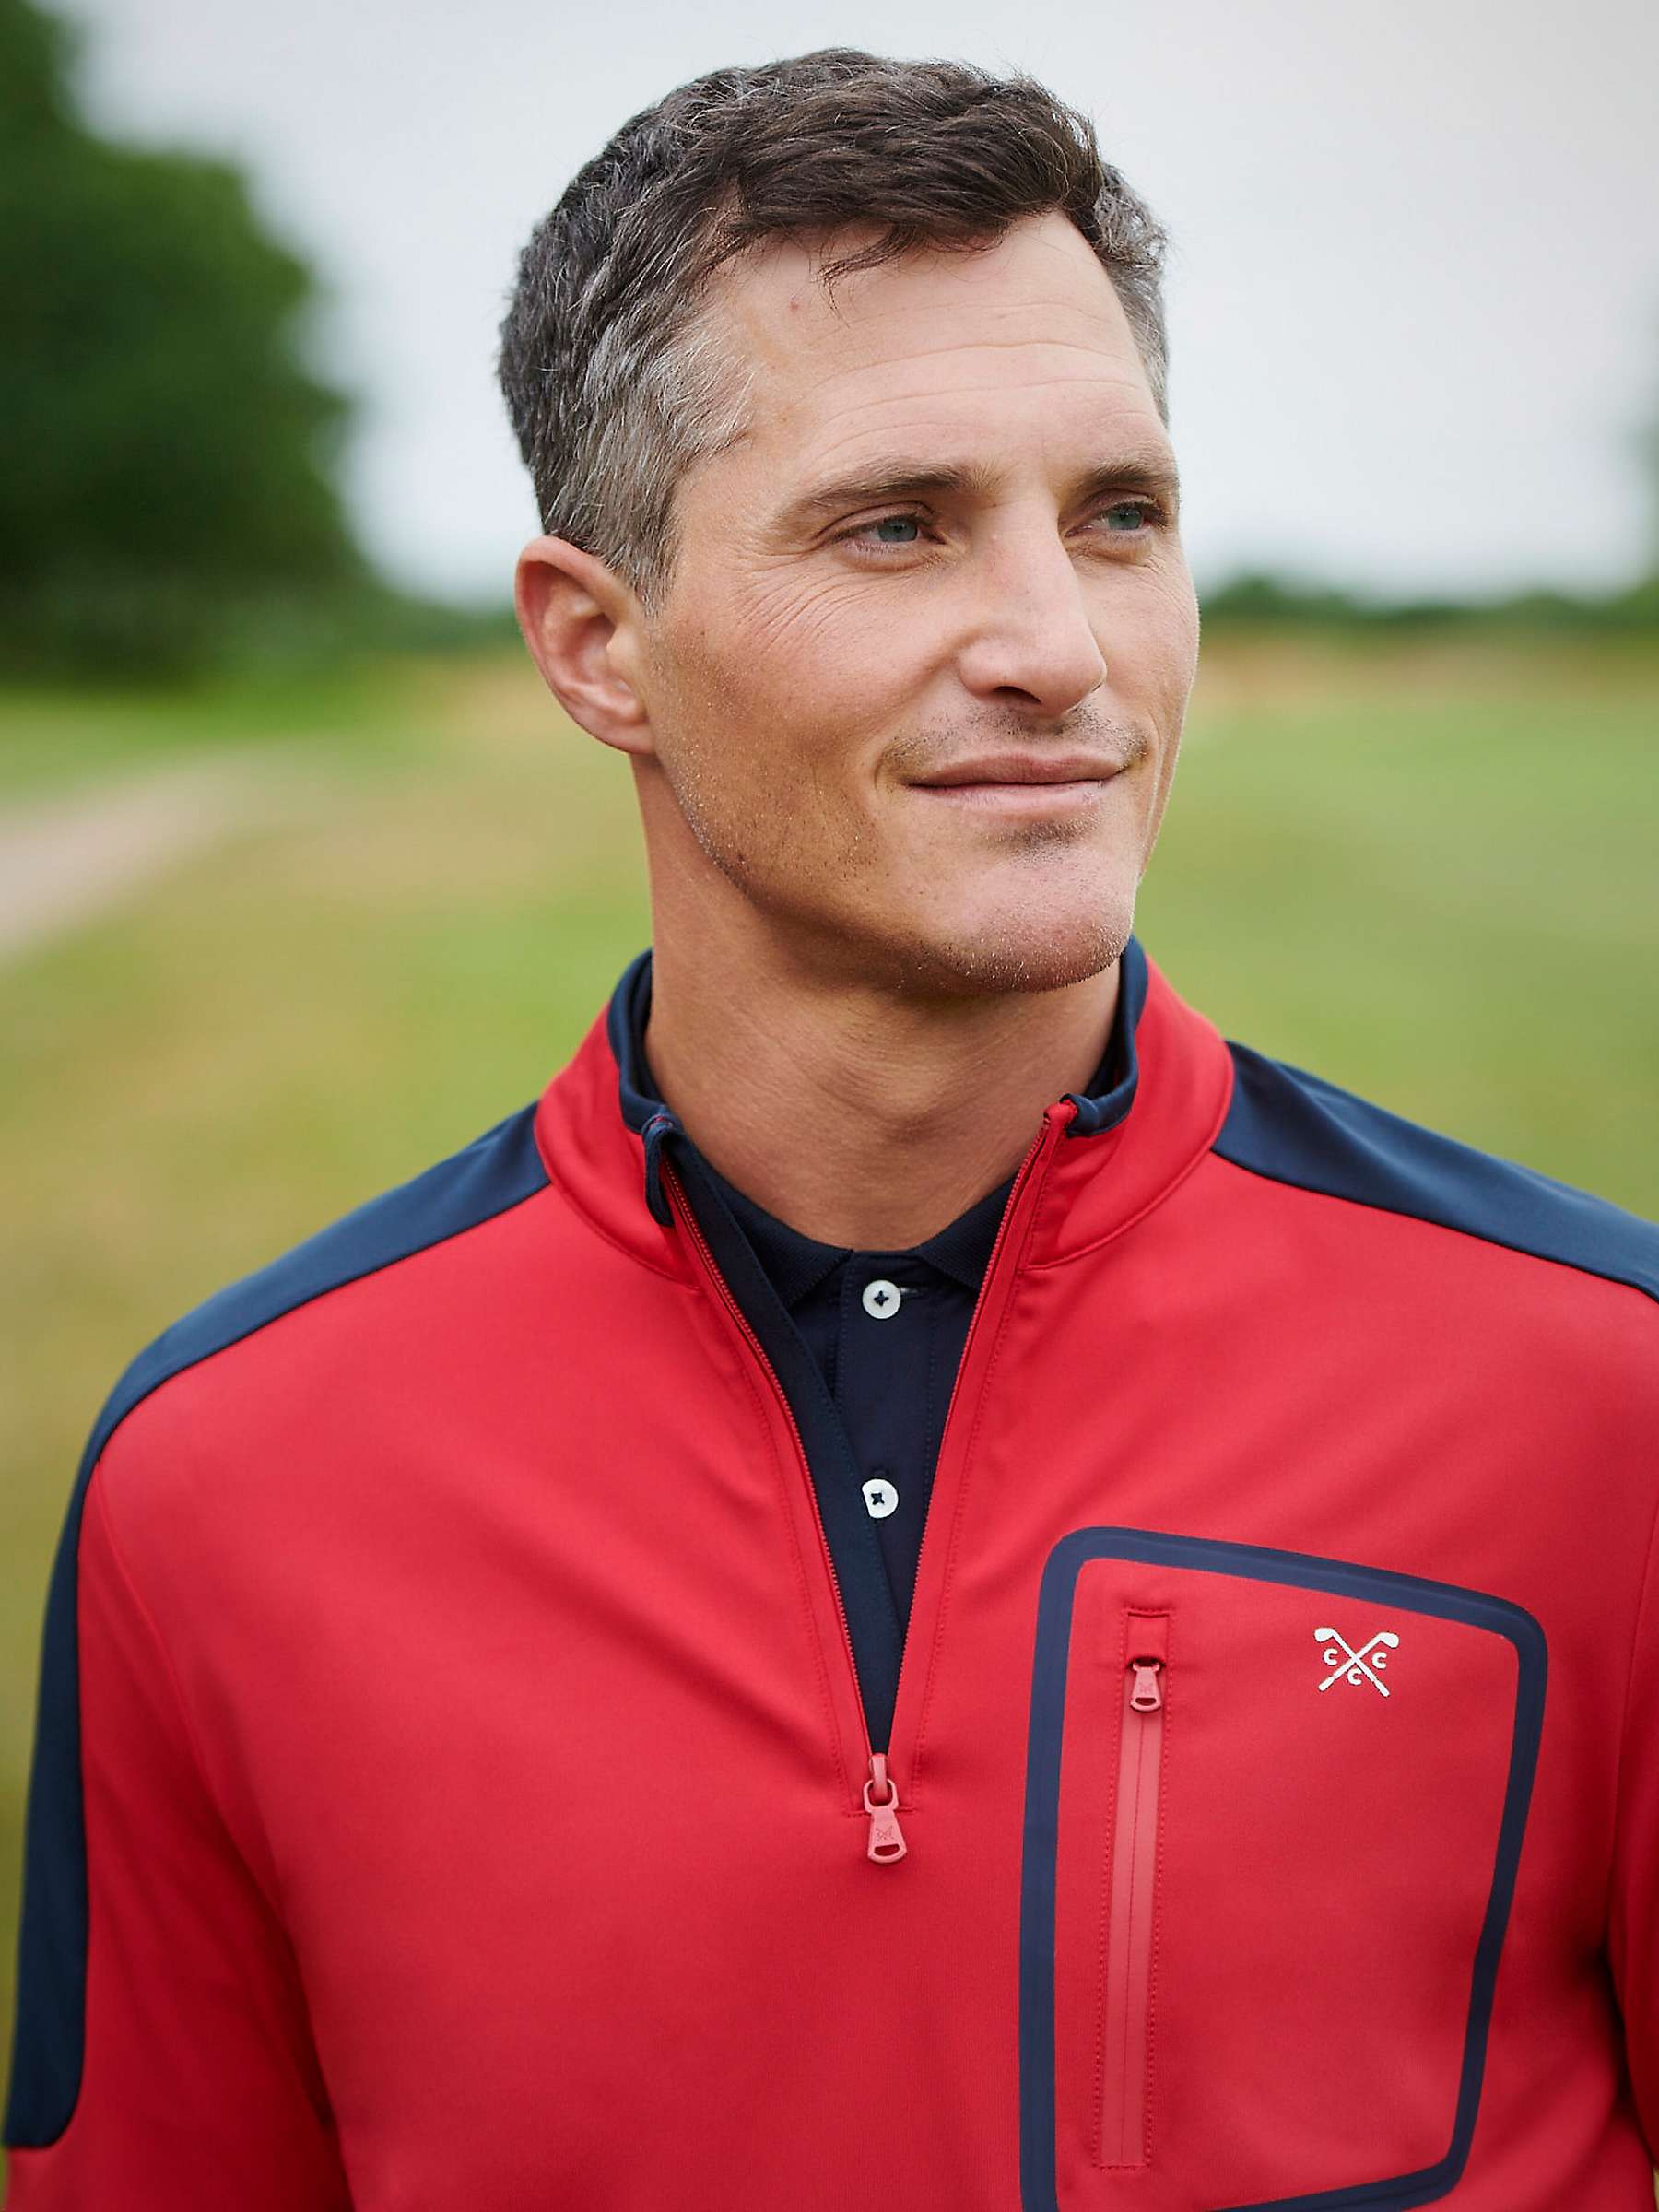 Buy Crew Clothing Fairway Half Zip Golf Sweatshirt, Mid Red Online at johnlewis.com